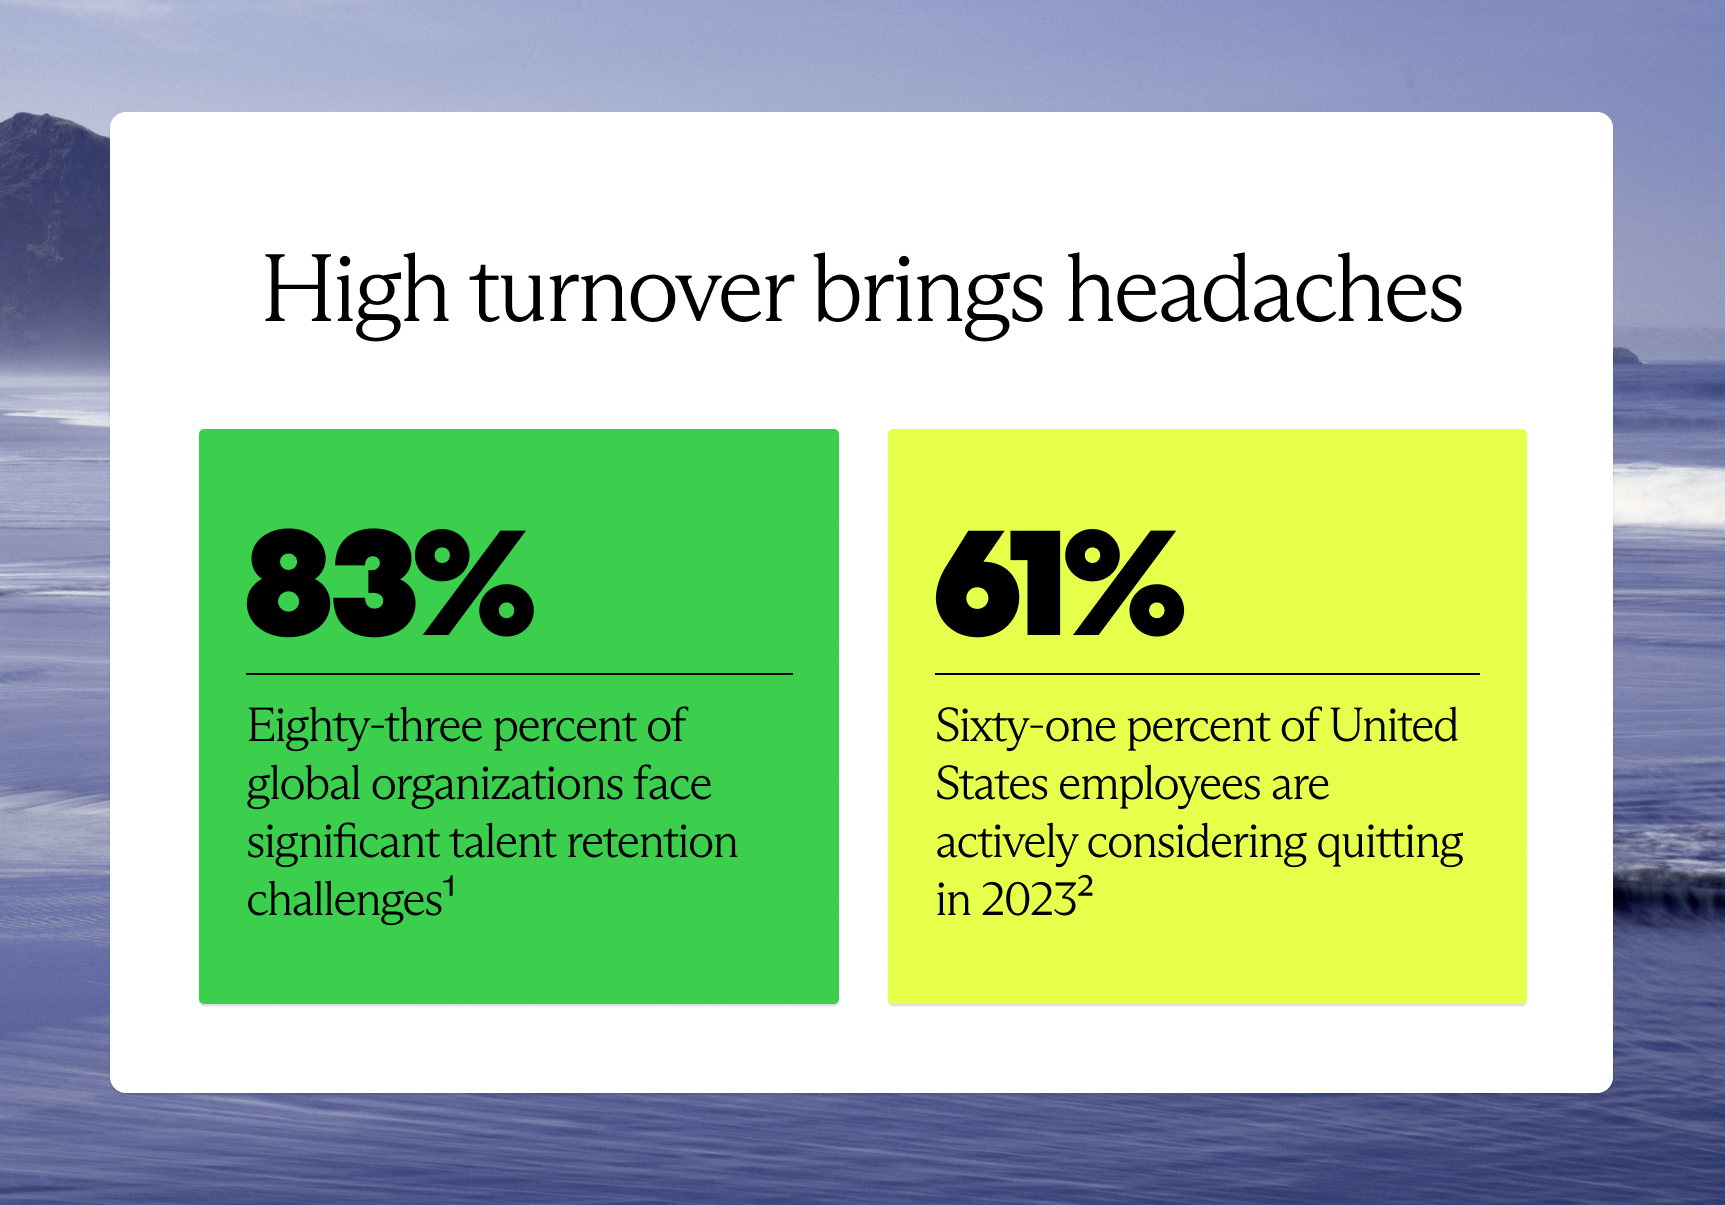 High turnover brings headaches